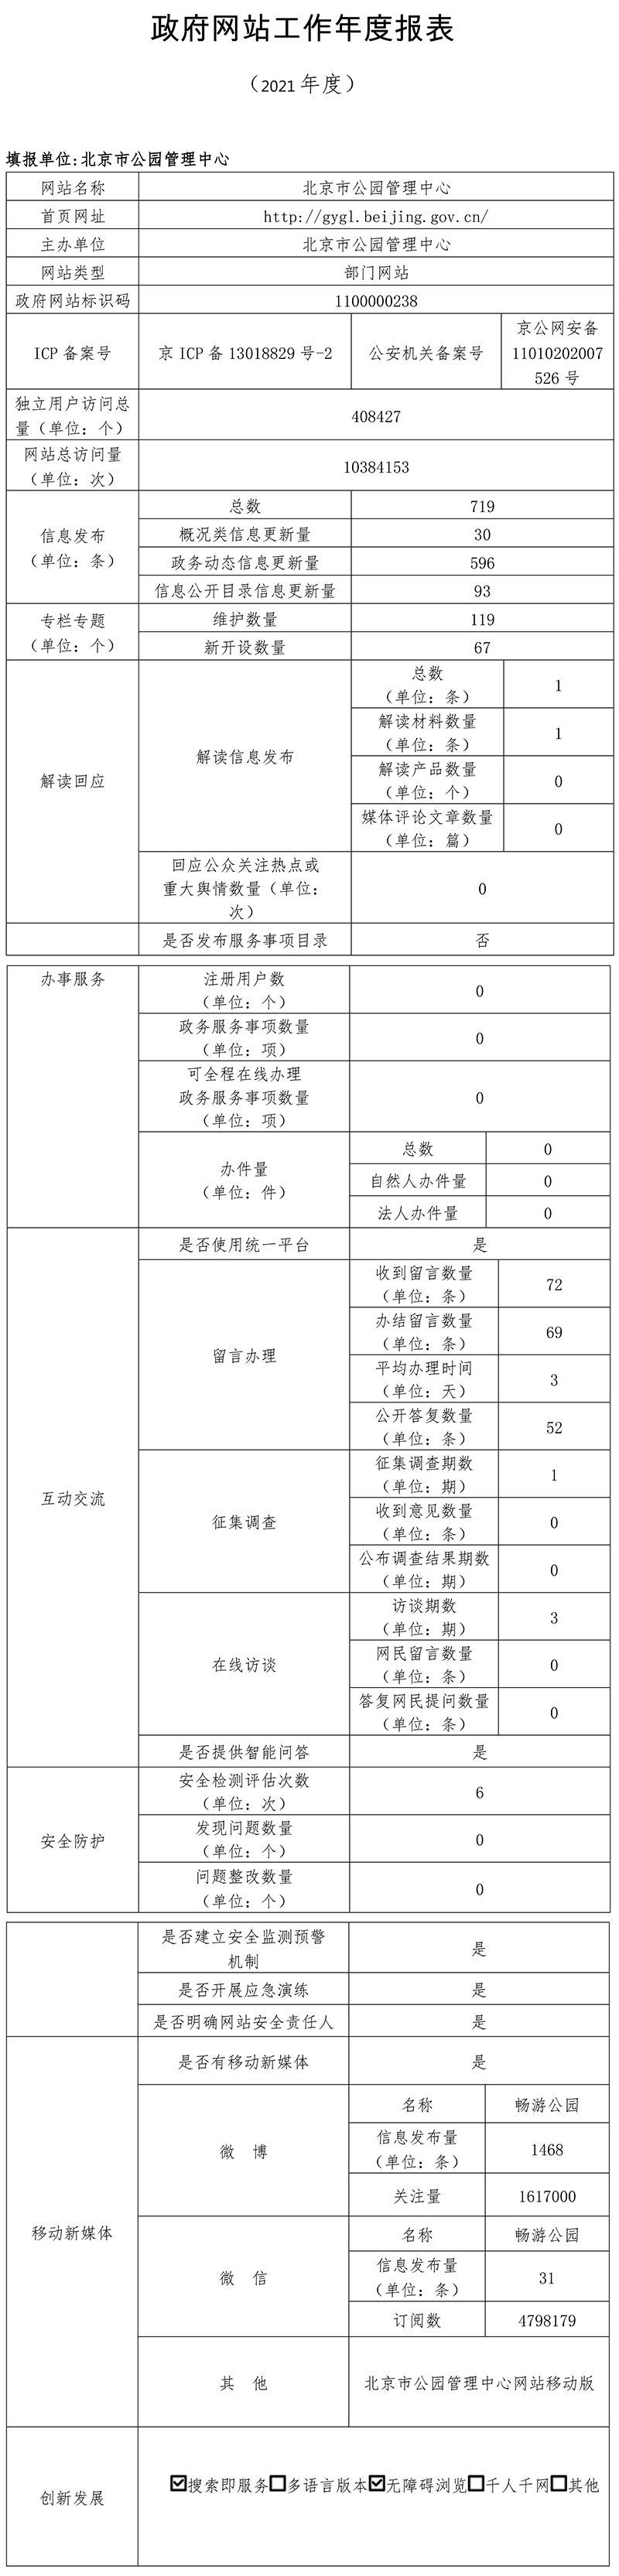 北京市公園管理中心2021年政府網站年度工作報表